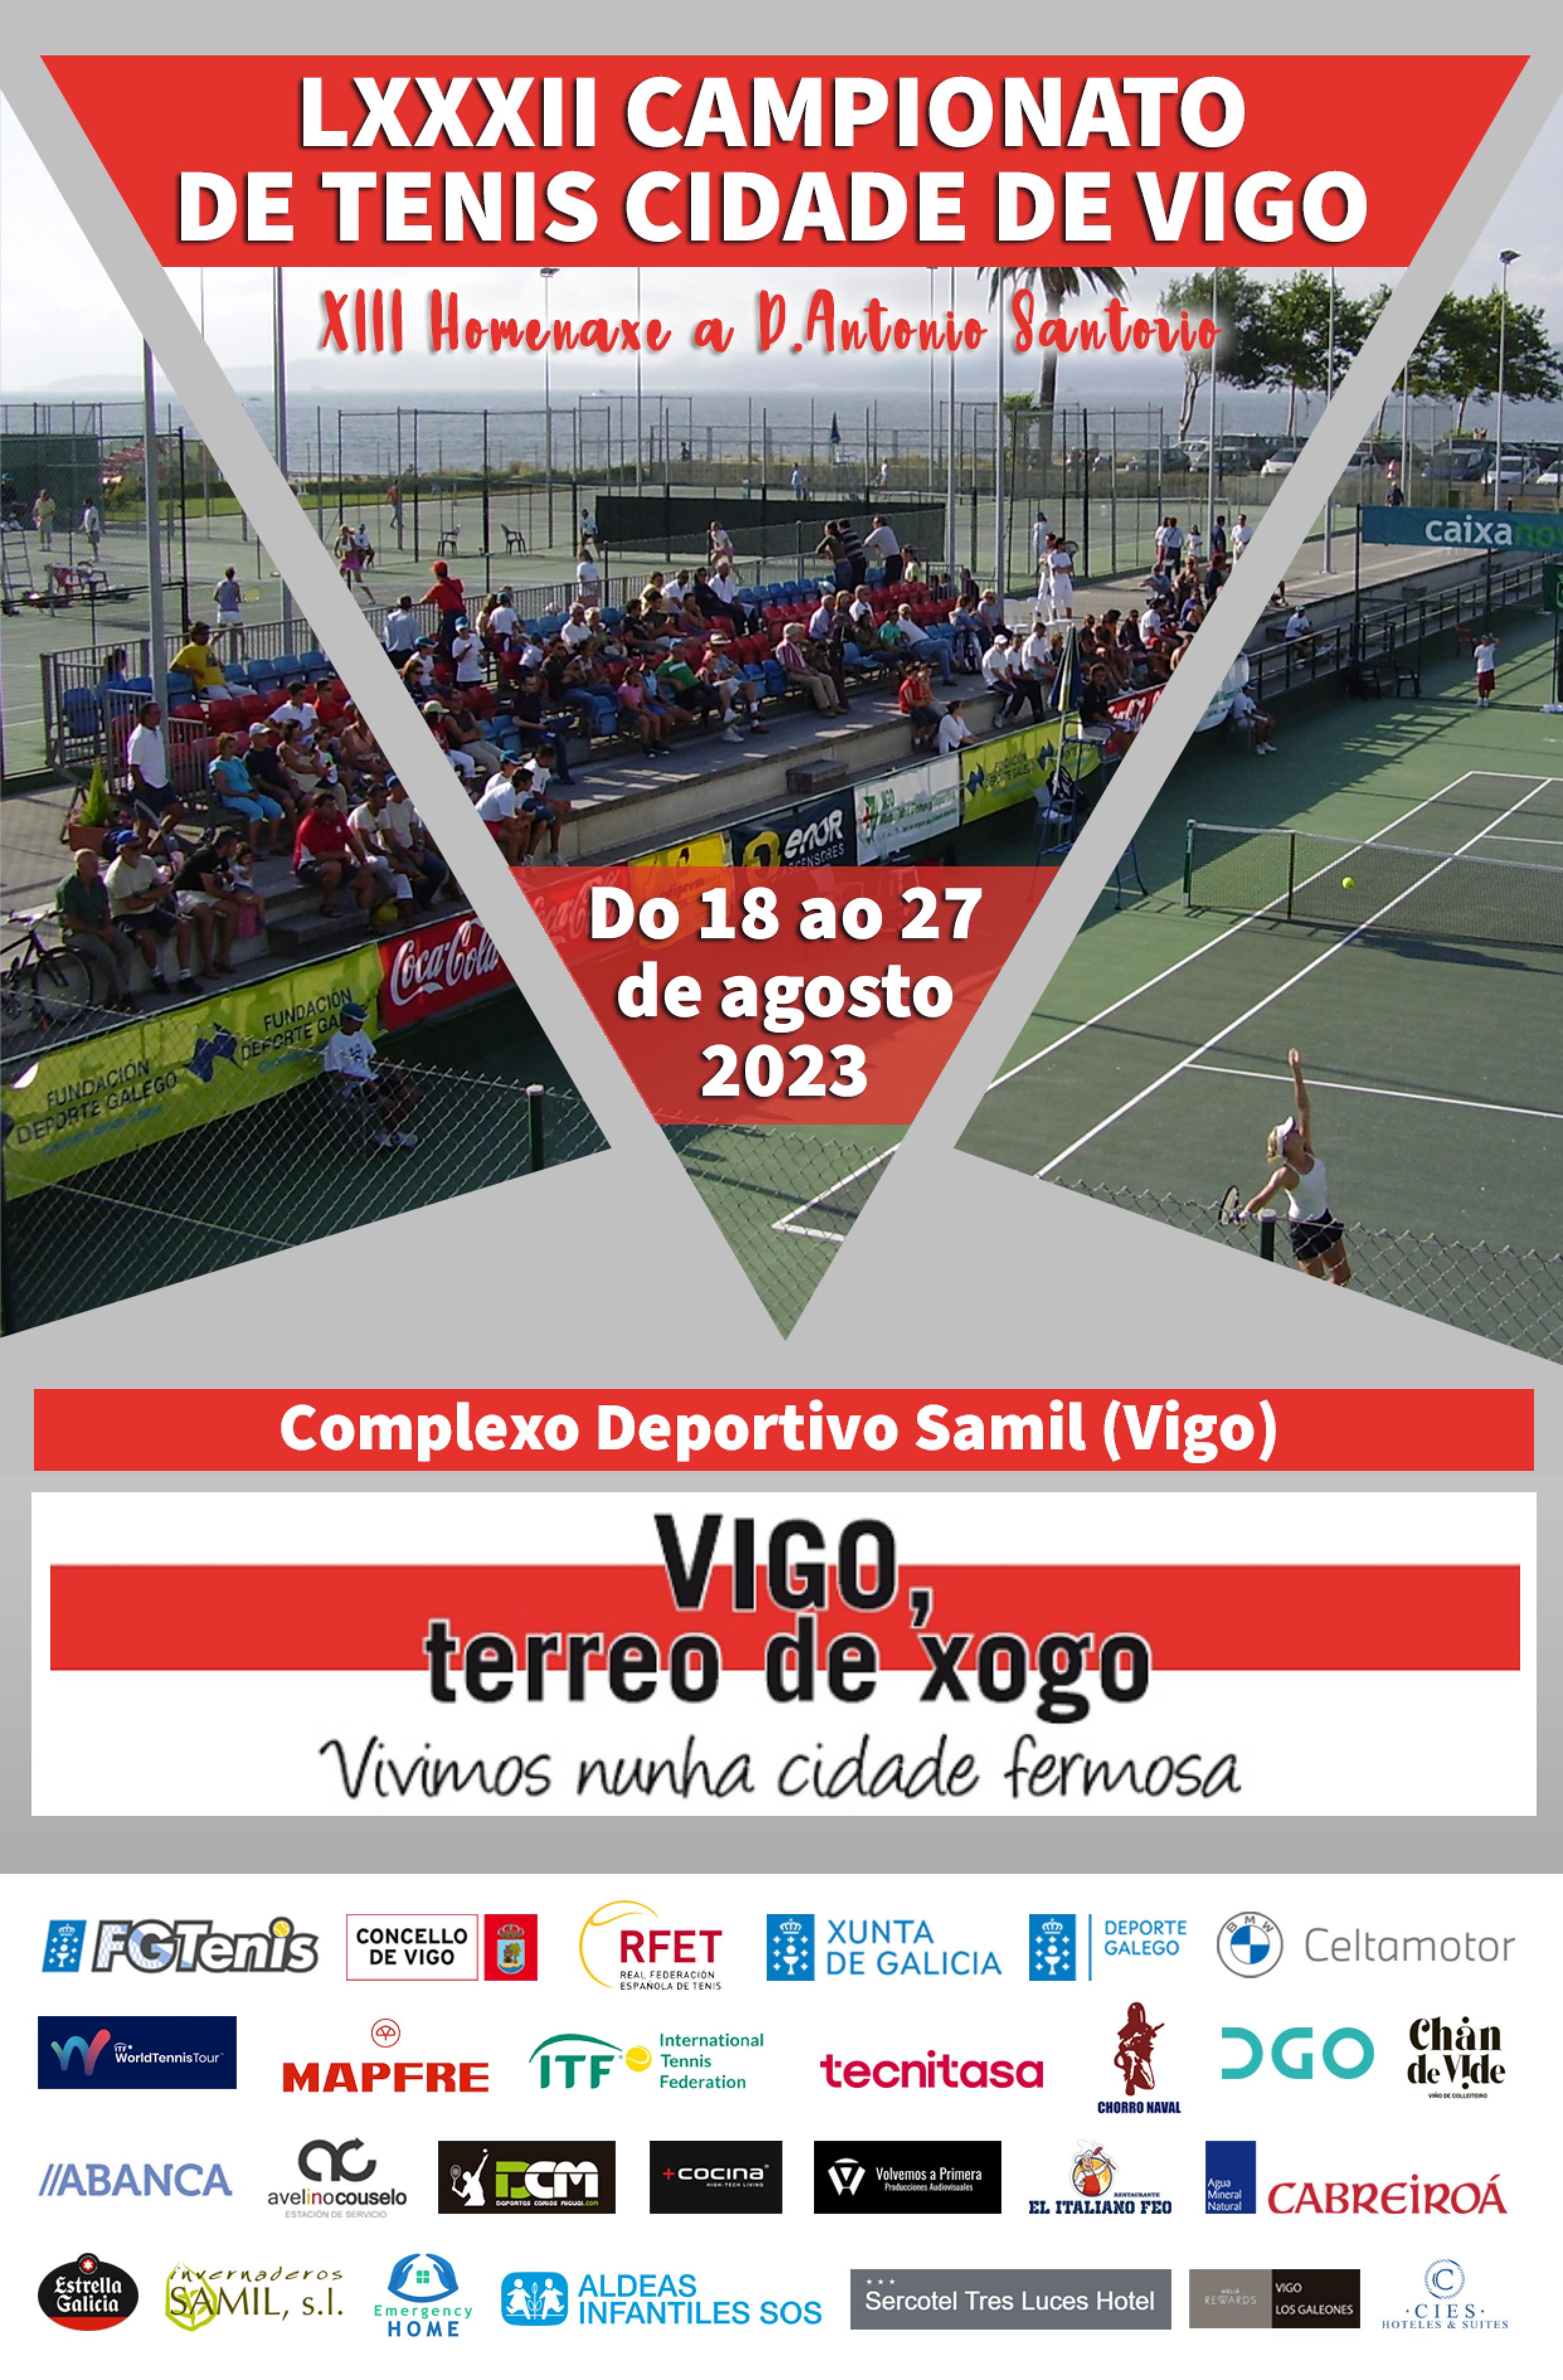 Cartel del LXXXII Campionato de Tenis Cidade de Vigo